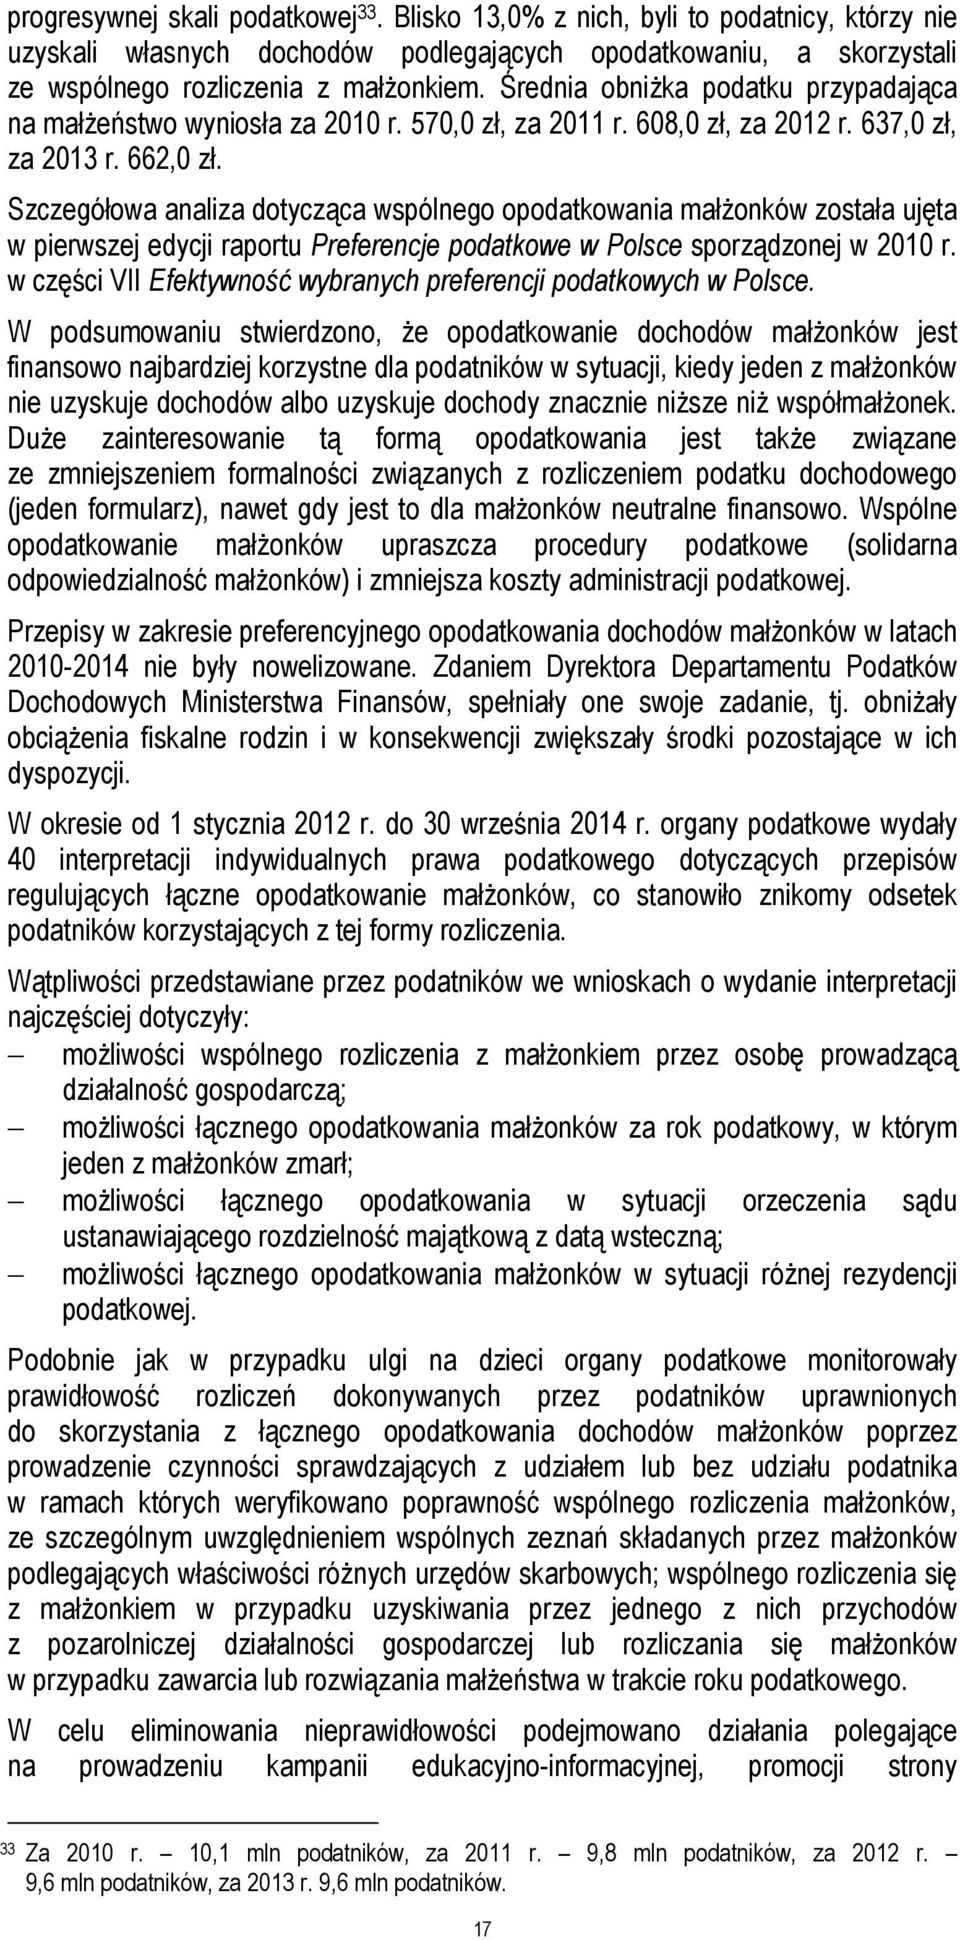 Szczegółowa analiza dotycząca wspólnego opodatkowania małżonków została ujęta w pierwszej edycji raportu Preferencje podatkowe w Polsce sporządzonej w 2010 r.